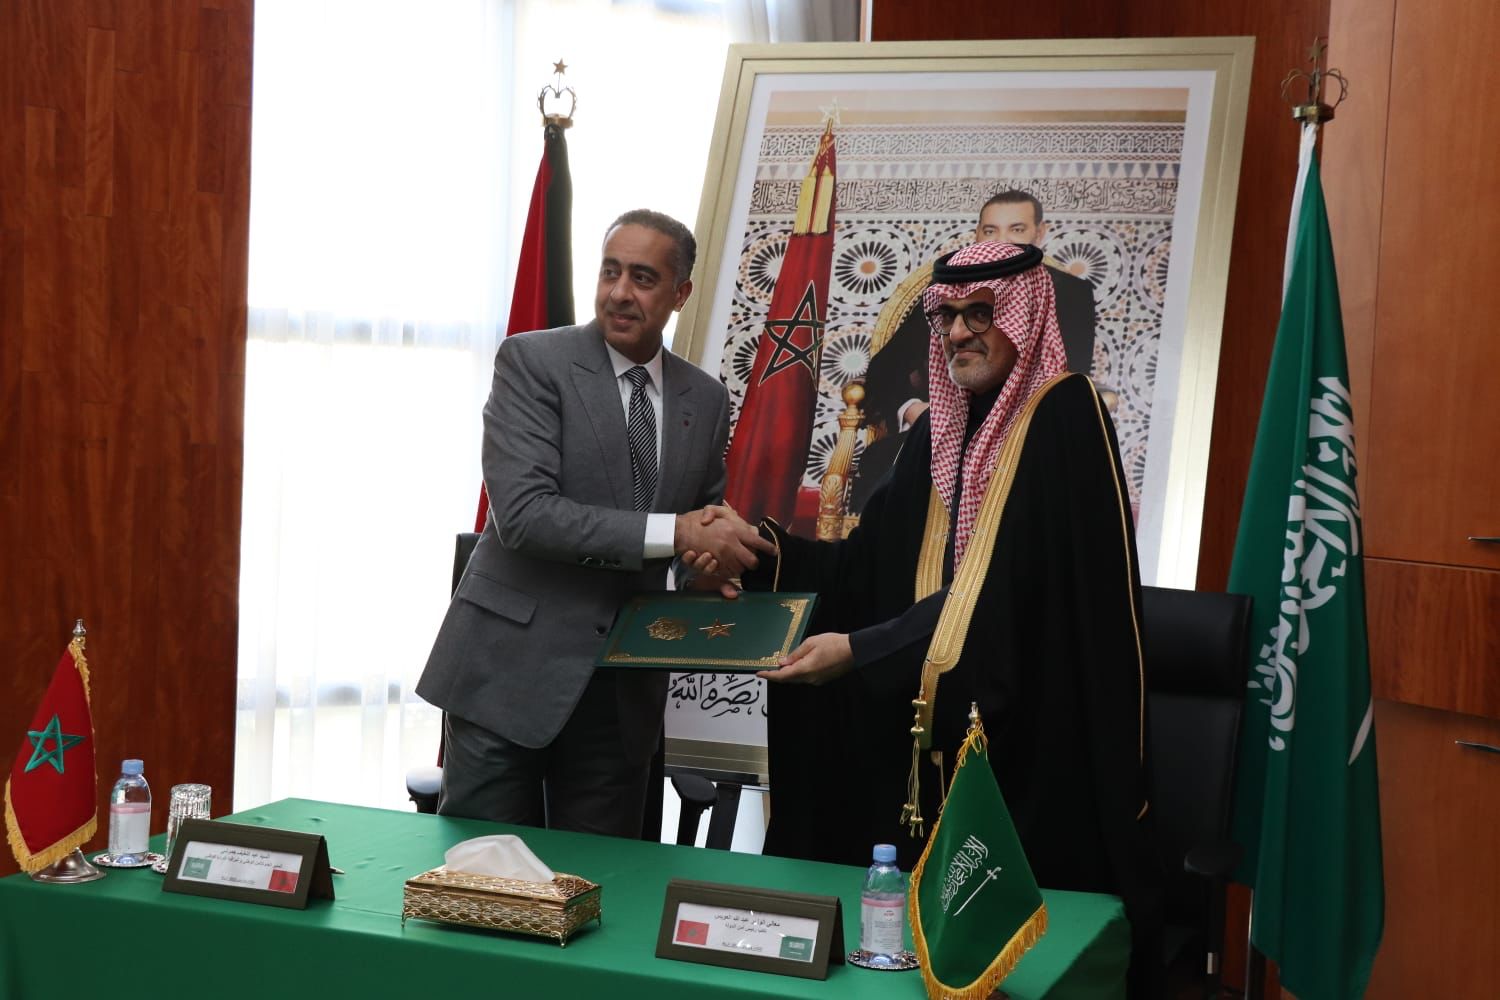 عبد اللطيف حموشي يستقبل نائب رئيس أمن الدولة السعودية ويوقعان اتفاقية مهمة في مجال محاربة الا.رهاب